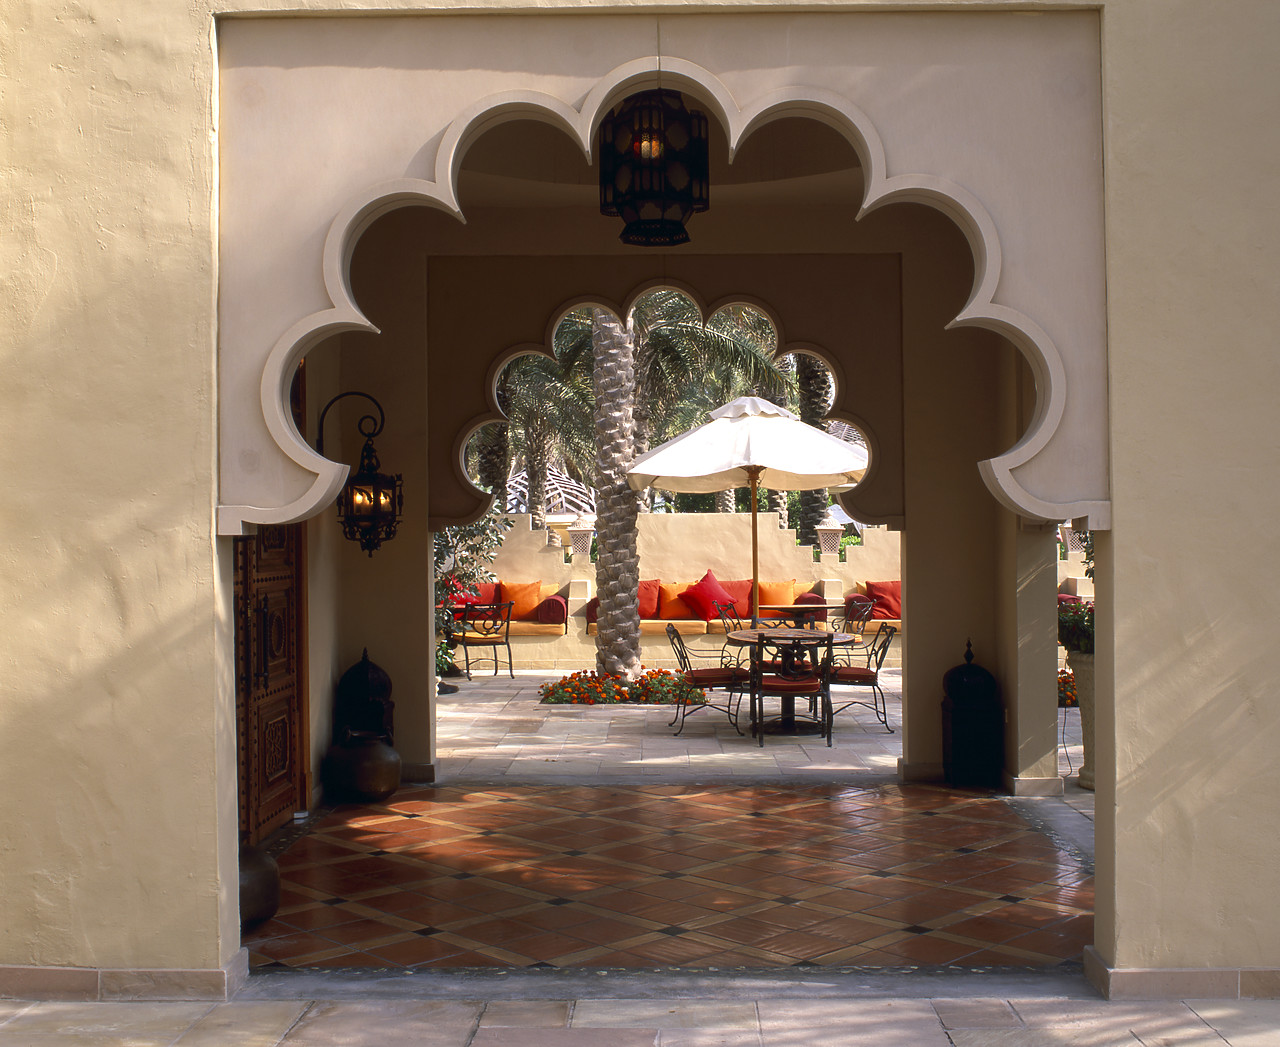 #050036-1 - Arabic Arches, Royal Mirage Hotel, Dubai, UAE